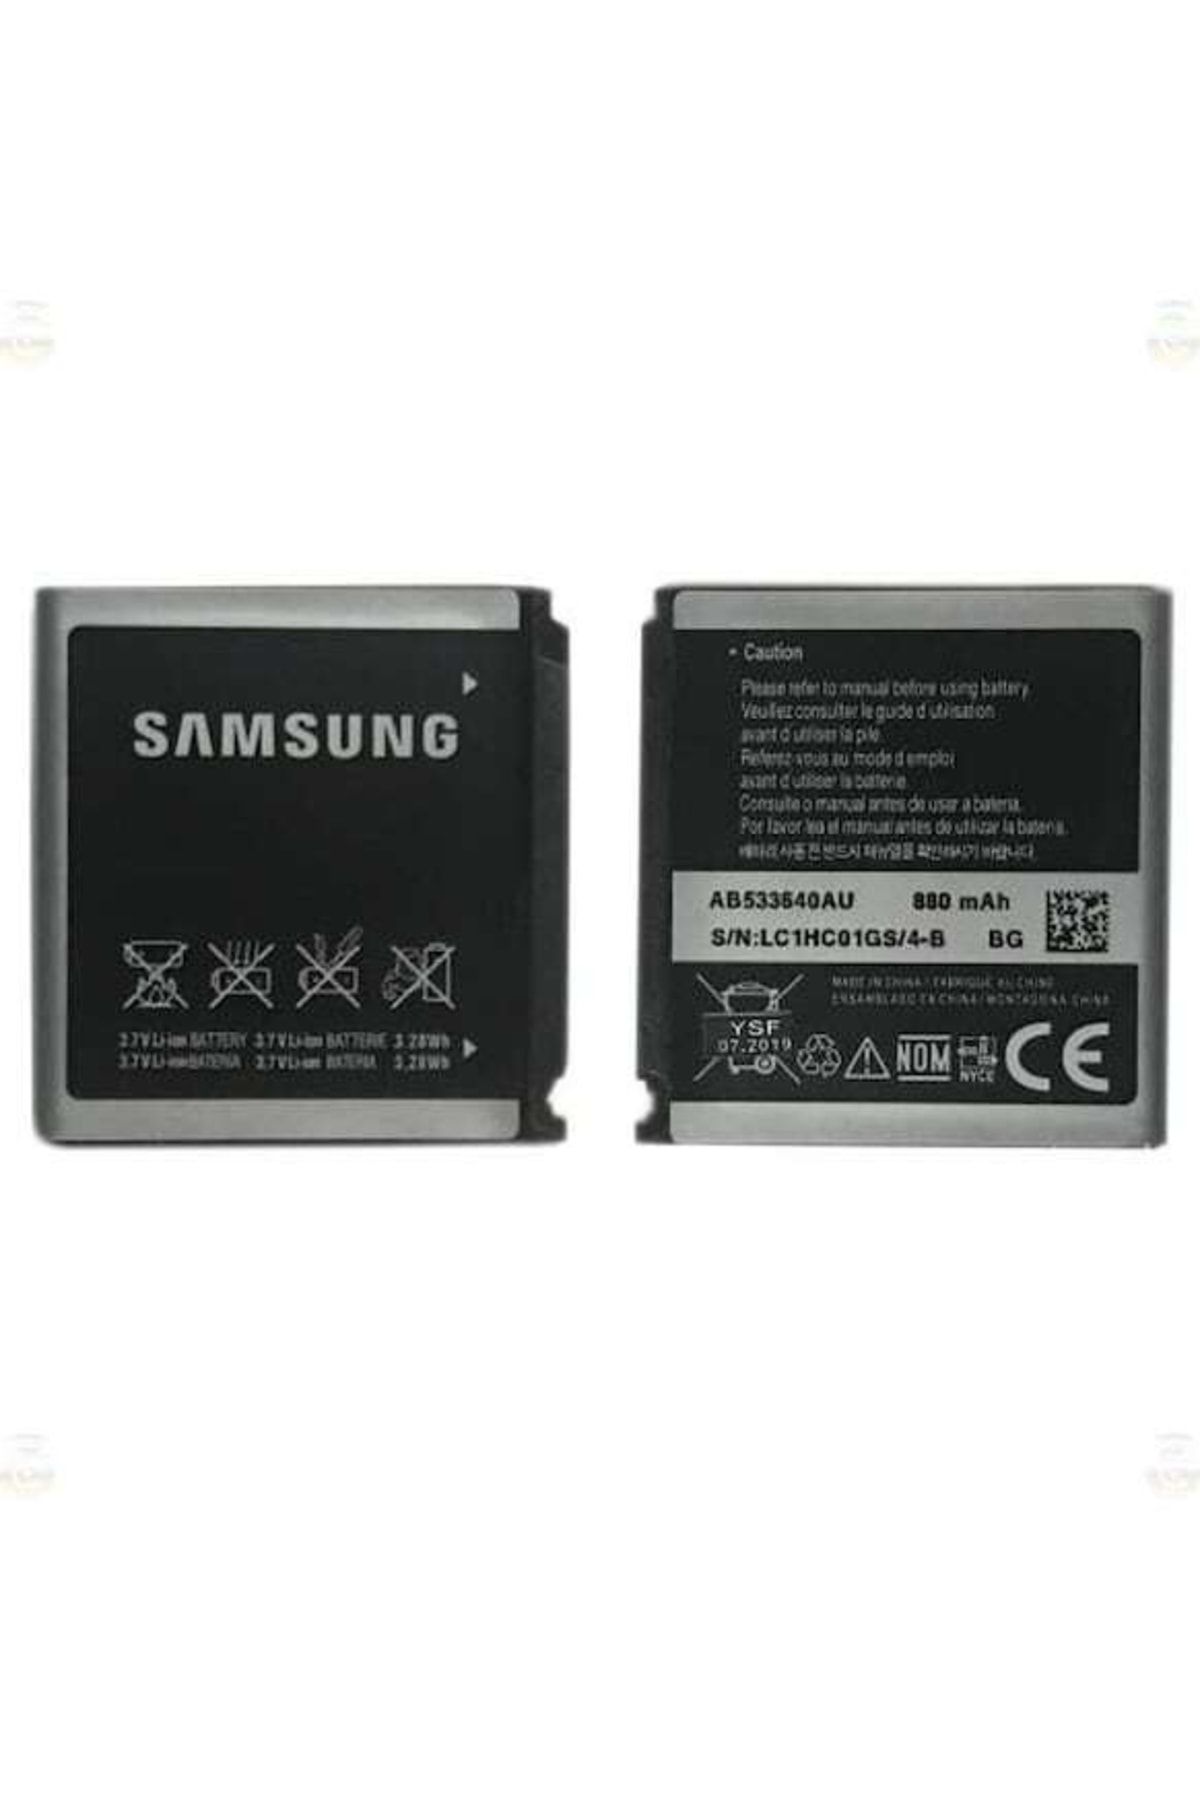 Galaxy Samsung S3600 Batarya Pil Ab533640cc 880 Mah